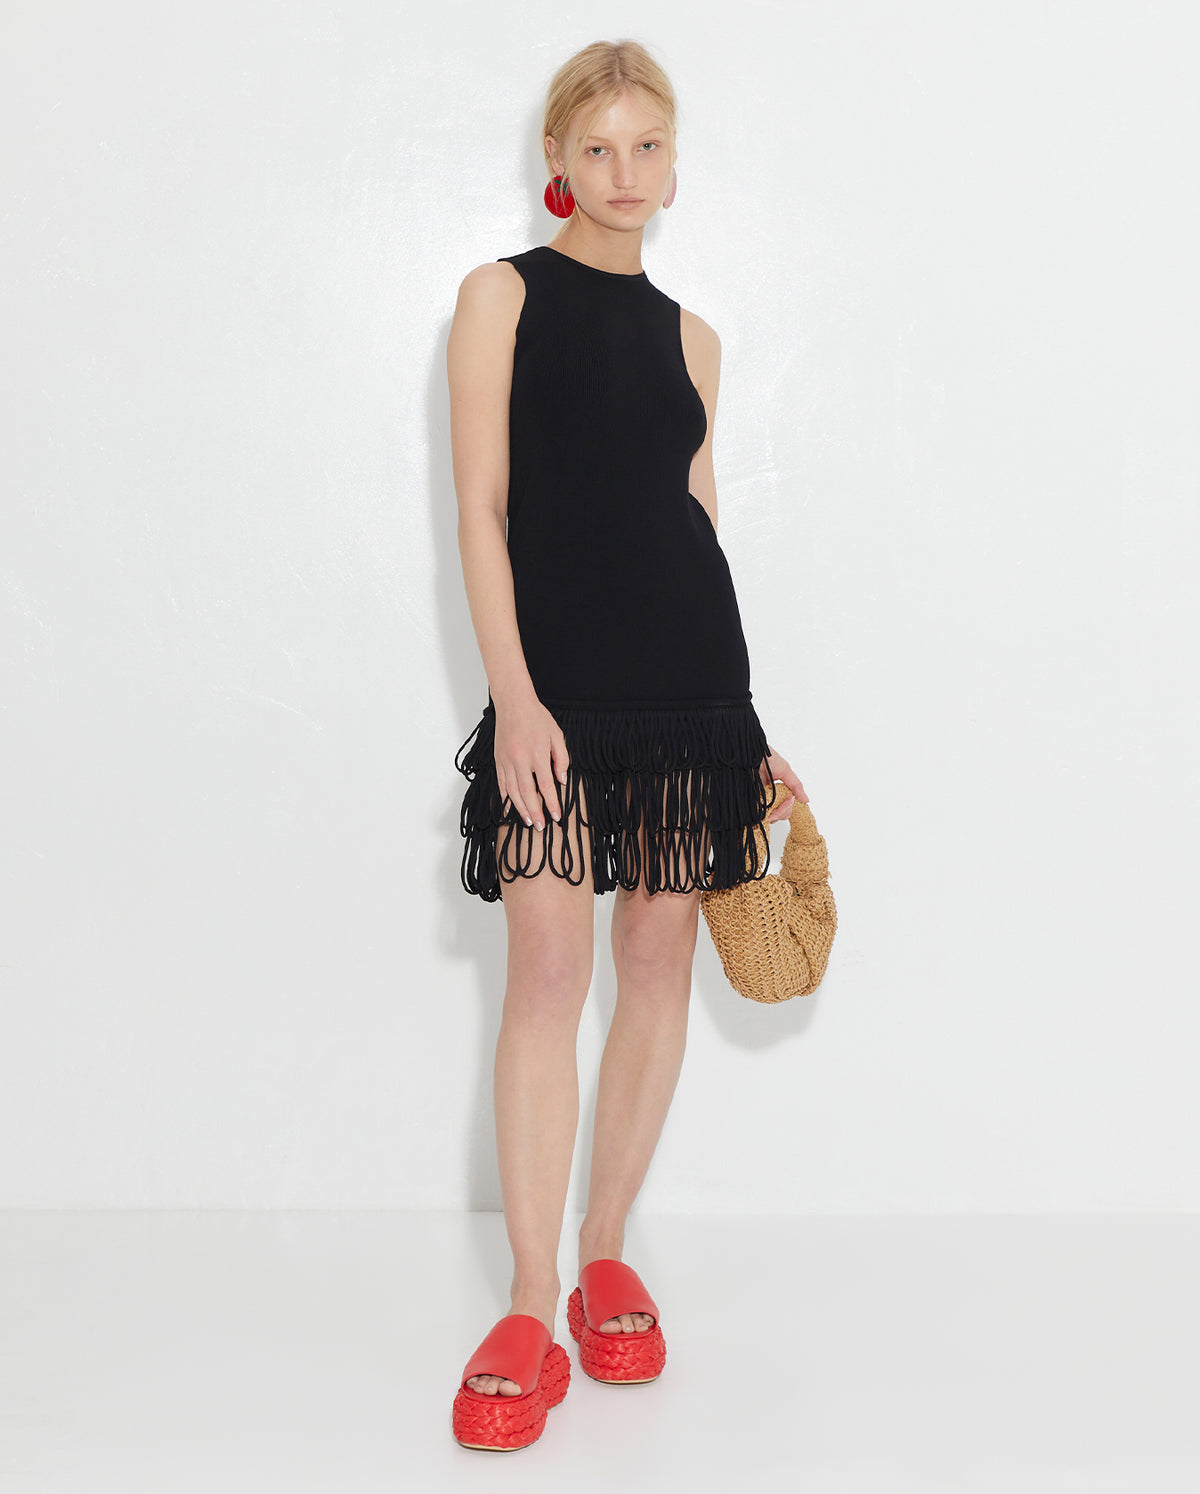 Albers Knit Mini Dress - Black